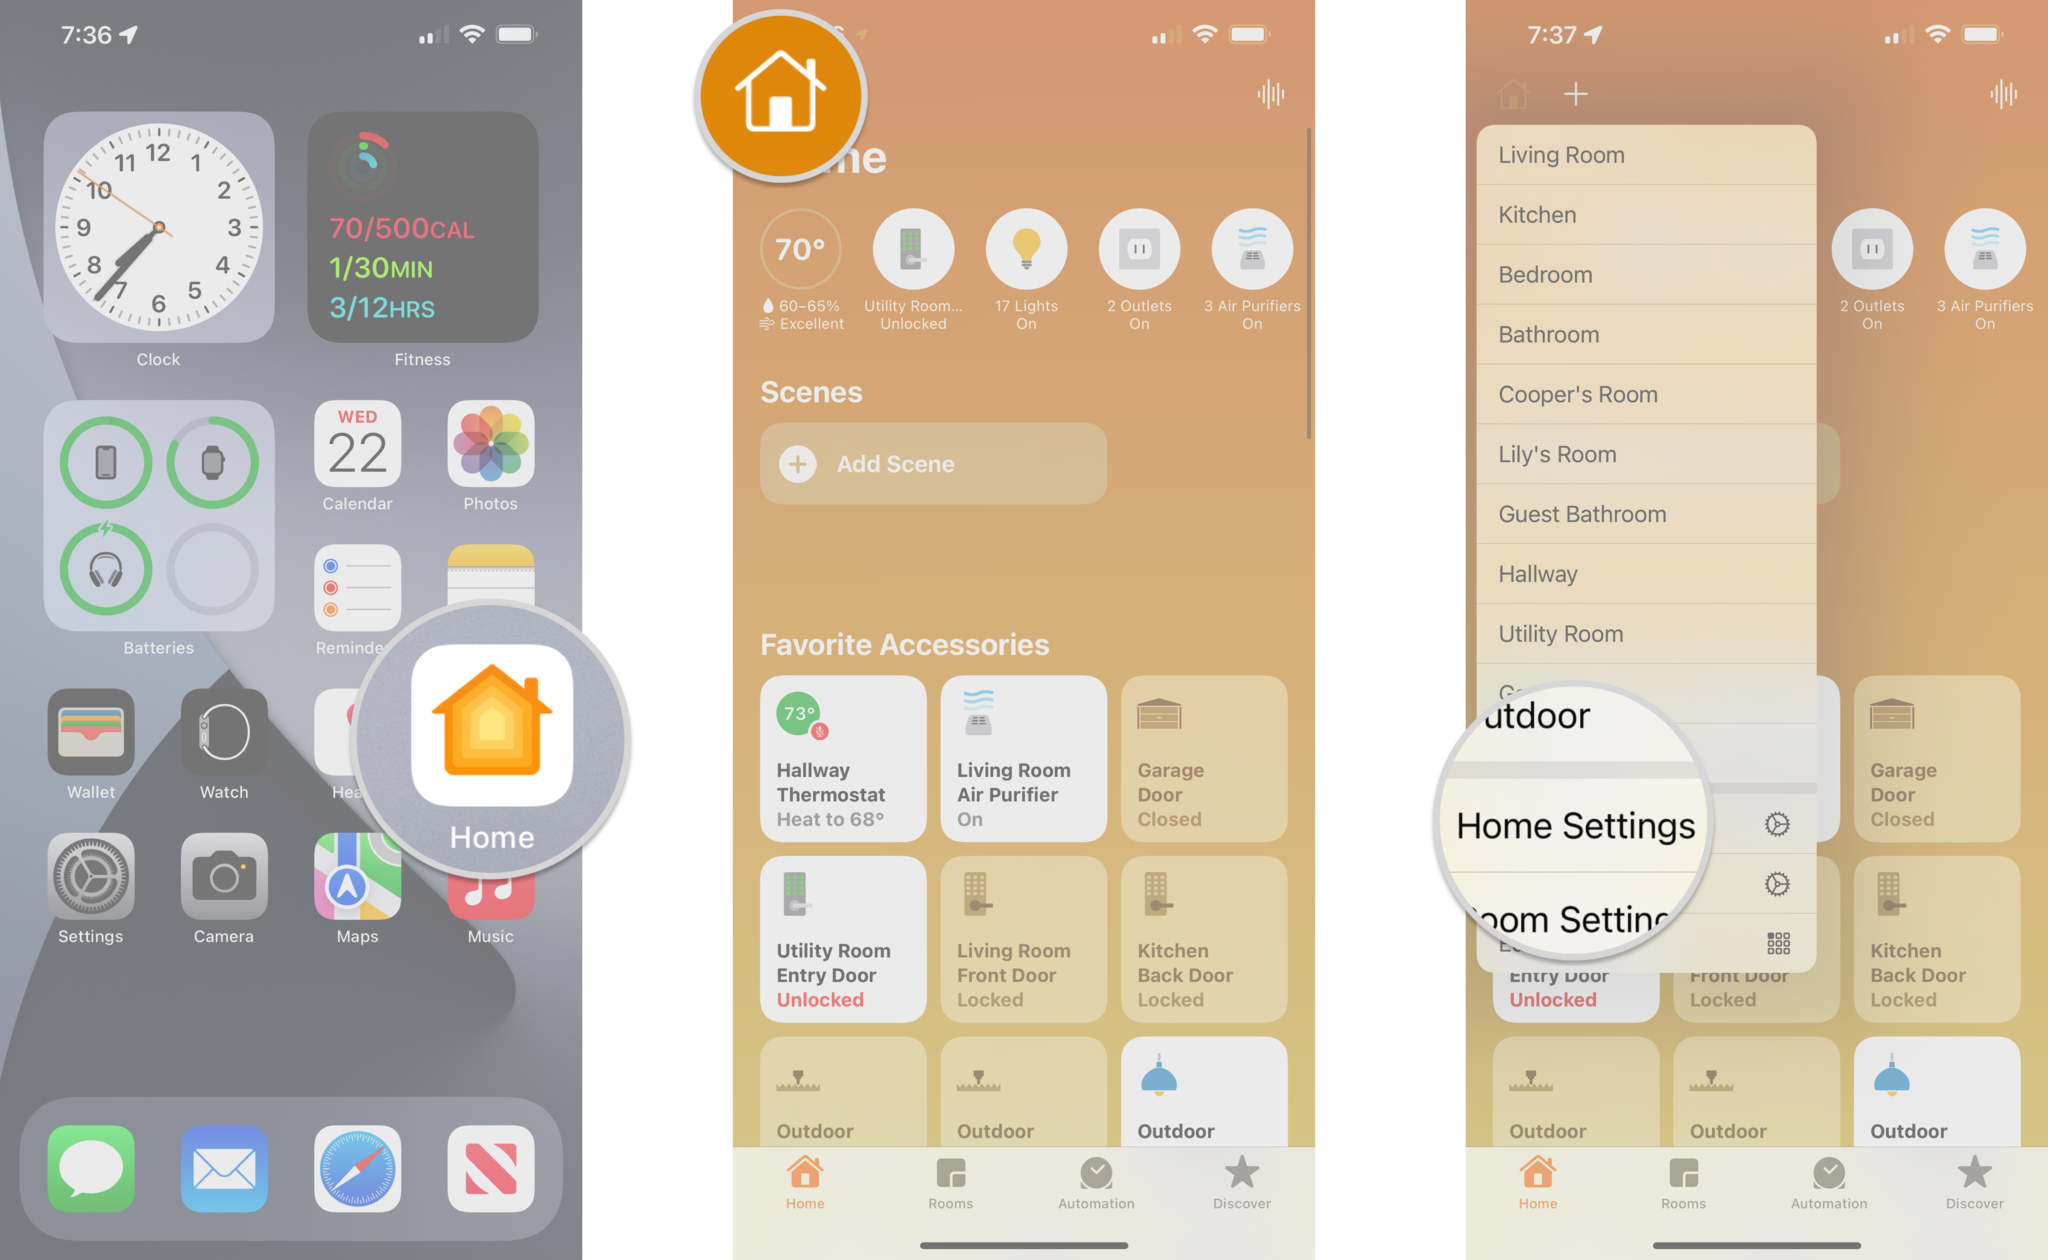 Comment supprimer un routeur HomeKit dans l'application Home en affichant les étapes sur un iPhone : lancez l'application Home, appuyez sur l'icône Home, appuyez sur Home Settings